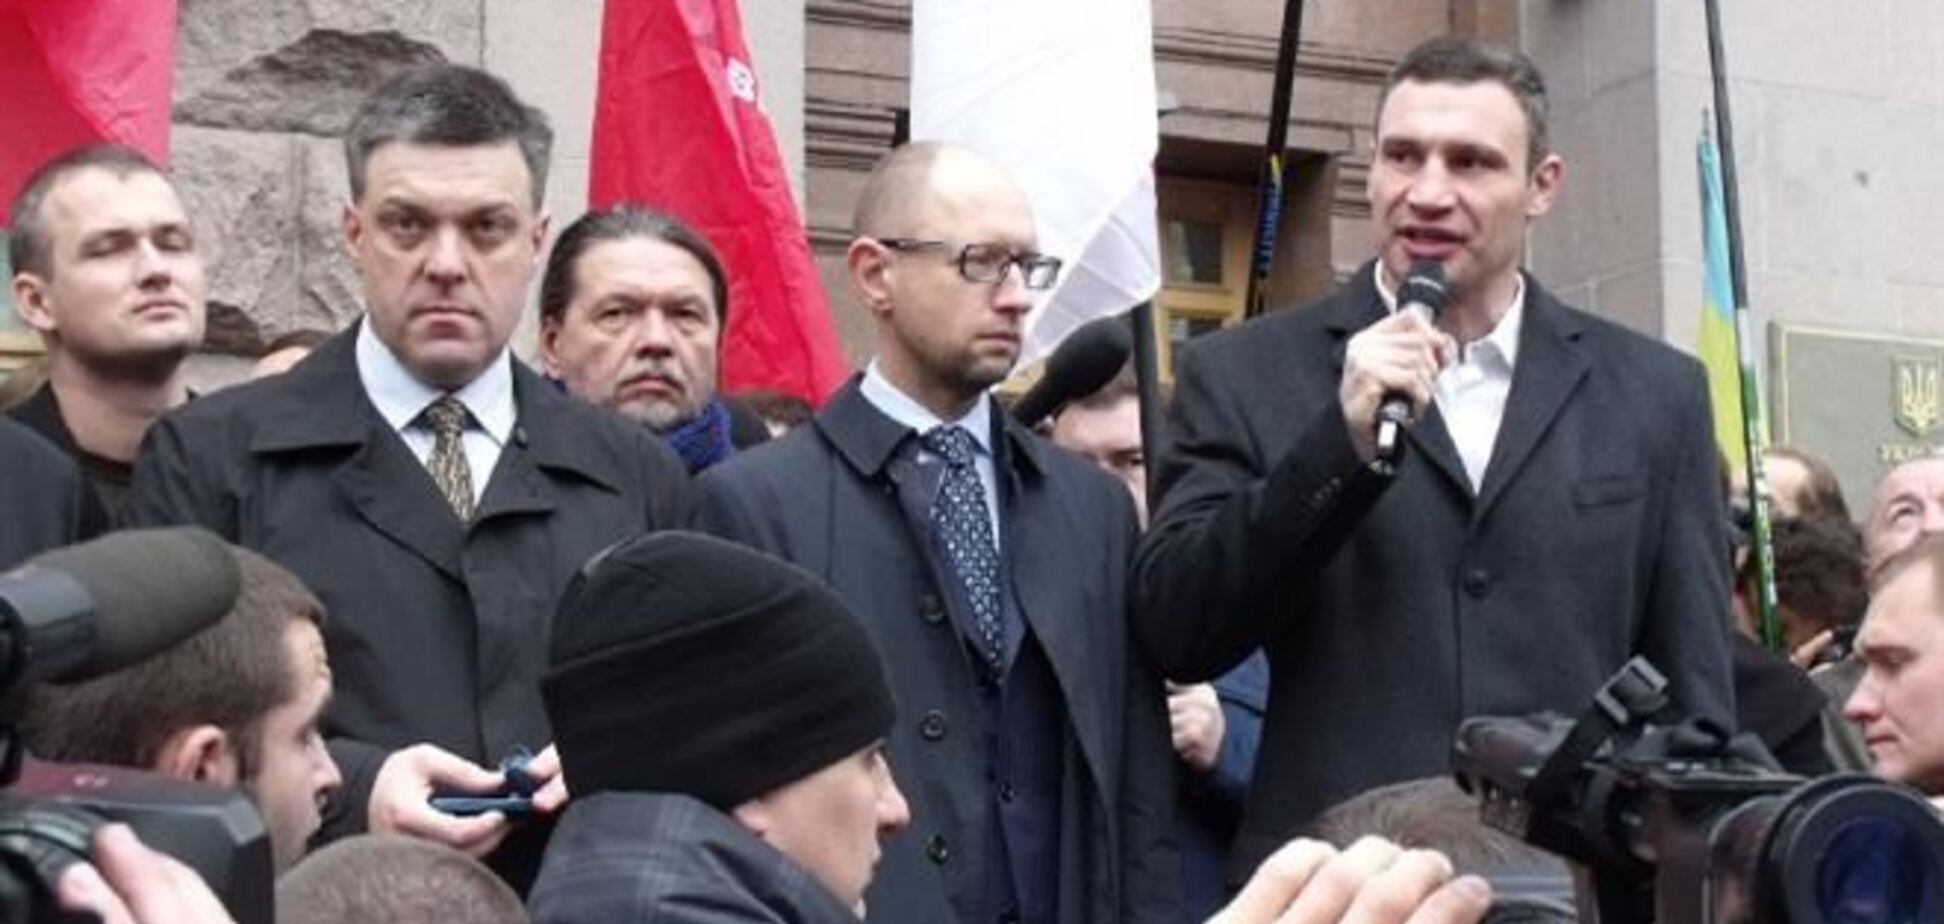 СМИ: Яценюк, Кличко и Тягнибок пошли к Януковичу